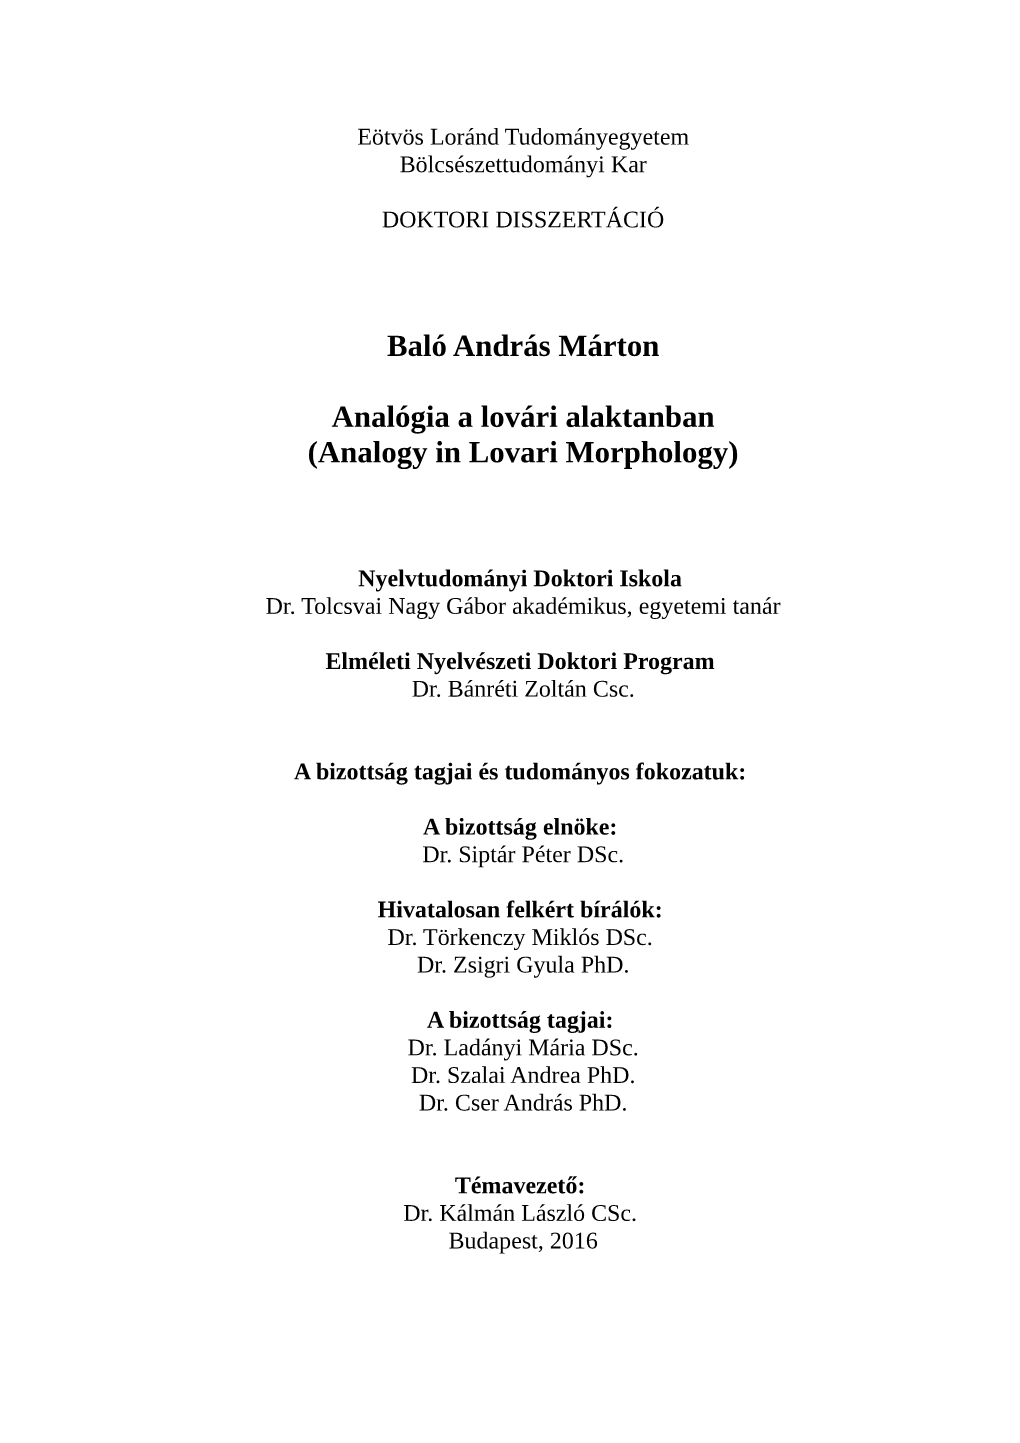 Baló András Márton Analógia a Lovári Alaktanban (Analogy in Lovari Morphology)